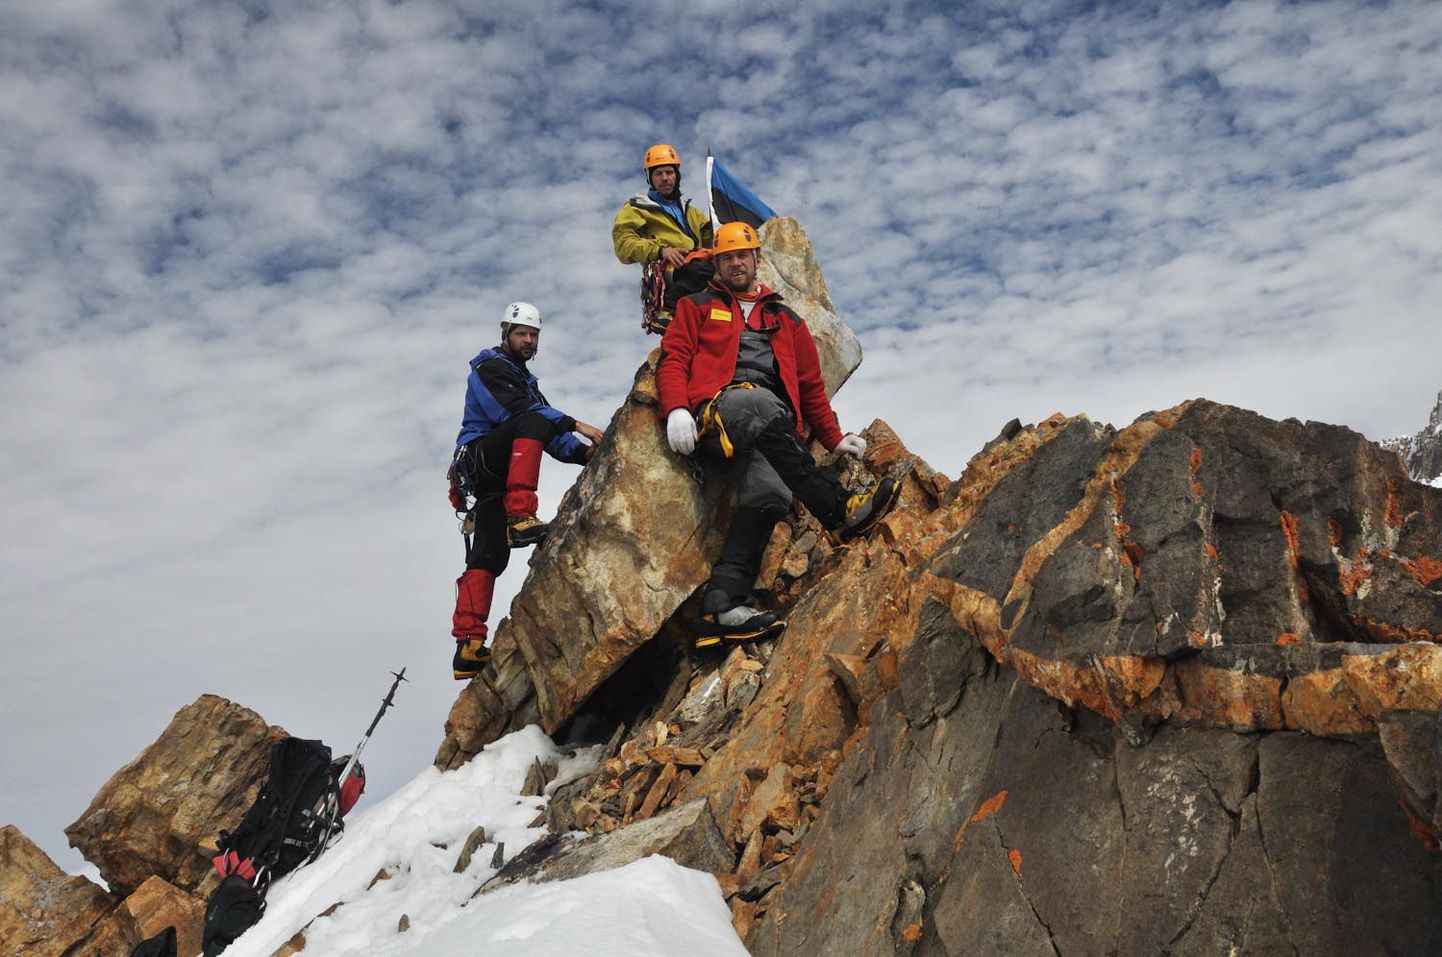 2010. aastal vallutasid seitse eesti mägironijat Kunluni mäestikus Hiinas esimestena maailmas kaks üle viie kilomeetri kõrgust mäetippu.
Ajaloolise tipuvallutusega said hakkama (vasakult) Marko Aasa, Priit Joosu ja Kristjan-Erik Suurväli.